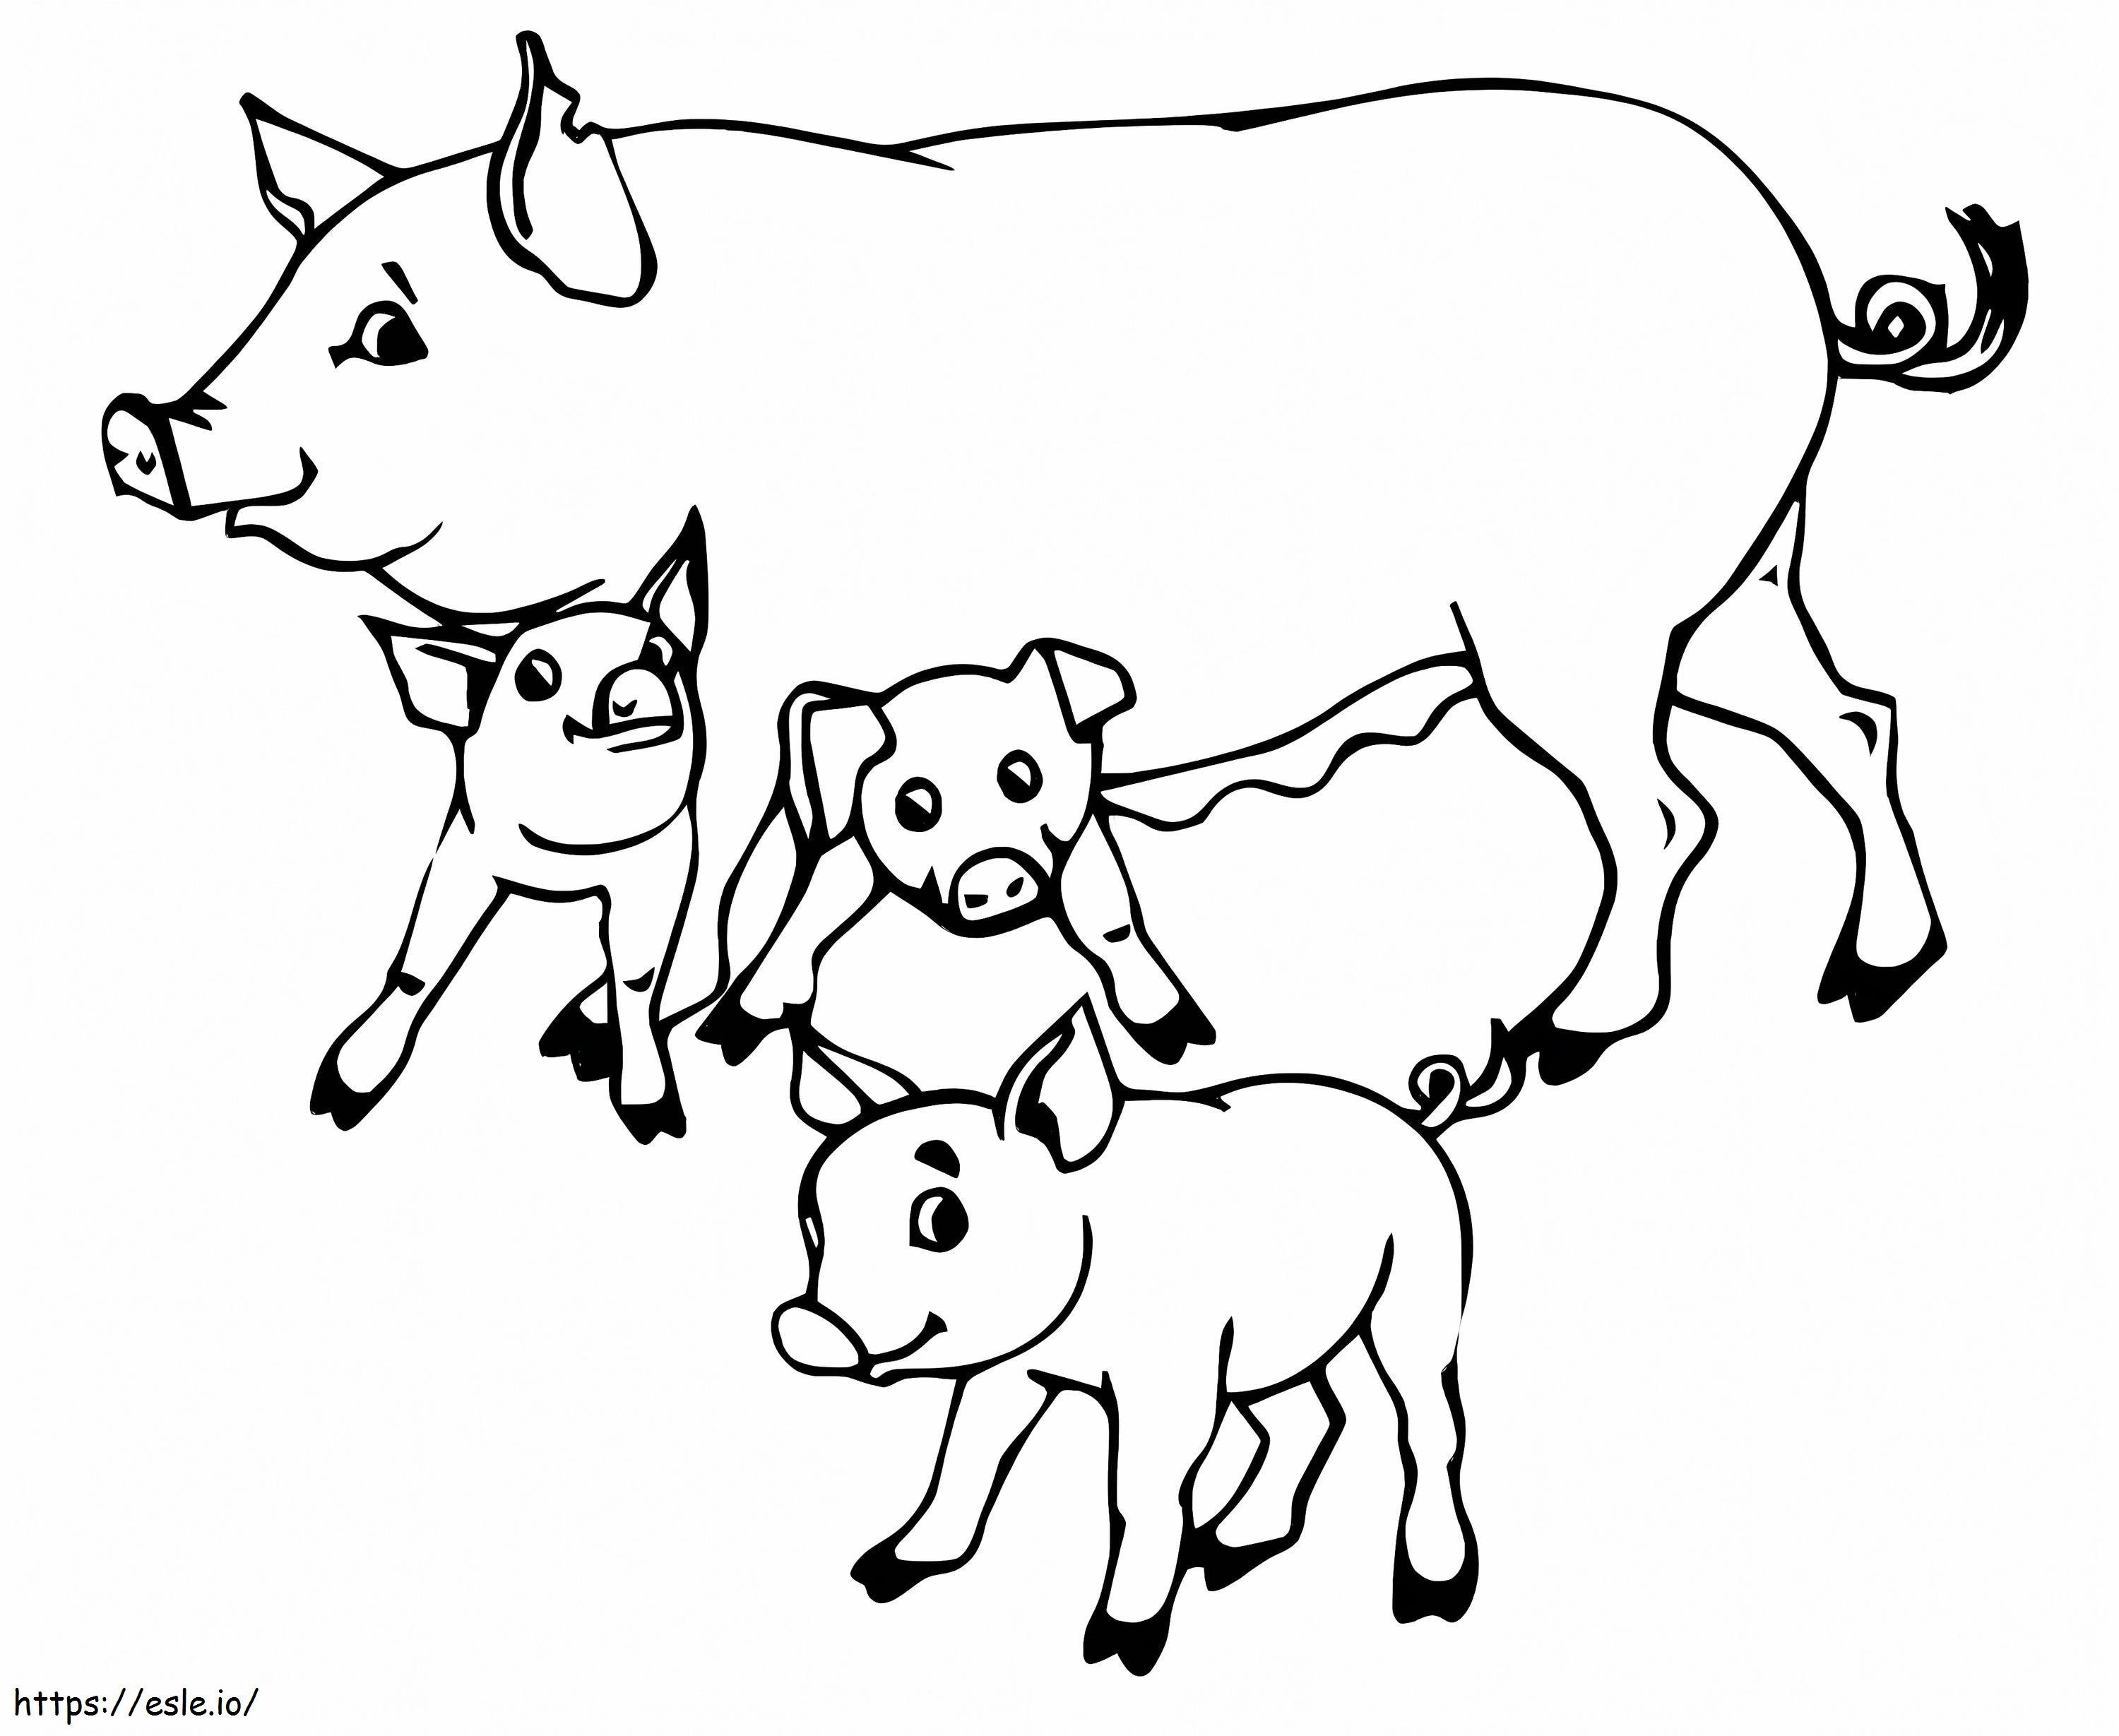 Mutterschweine und Ferkel ausmalbilder